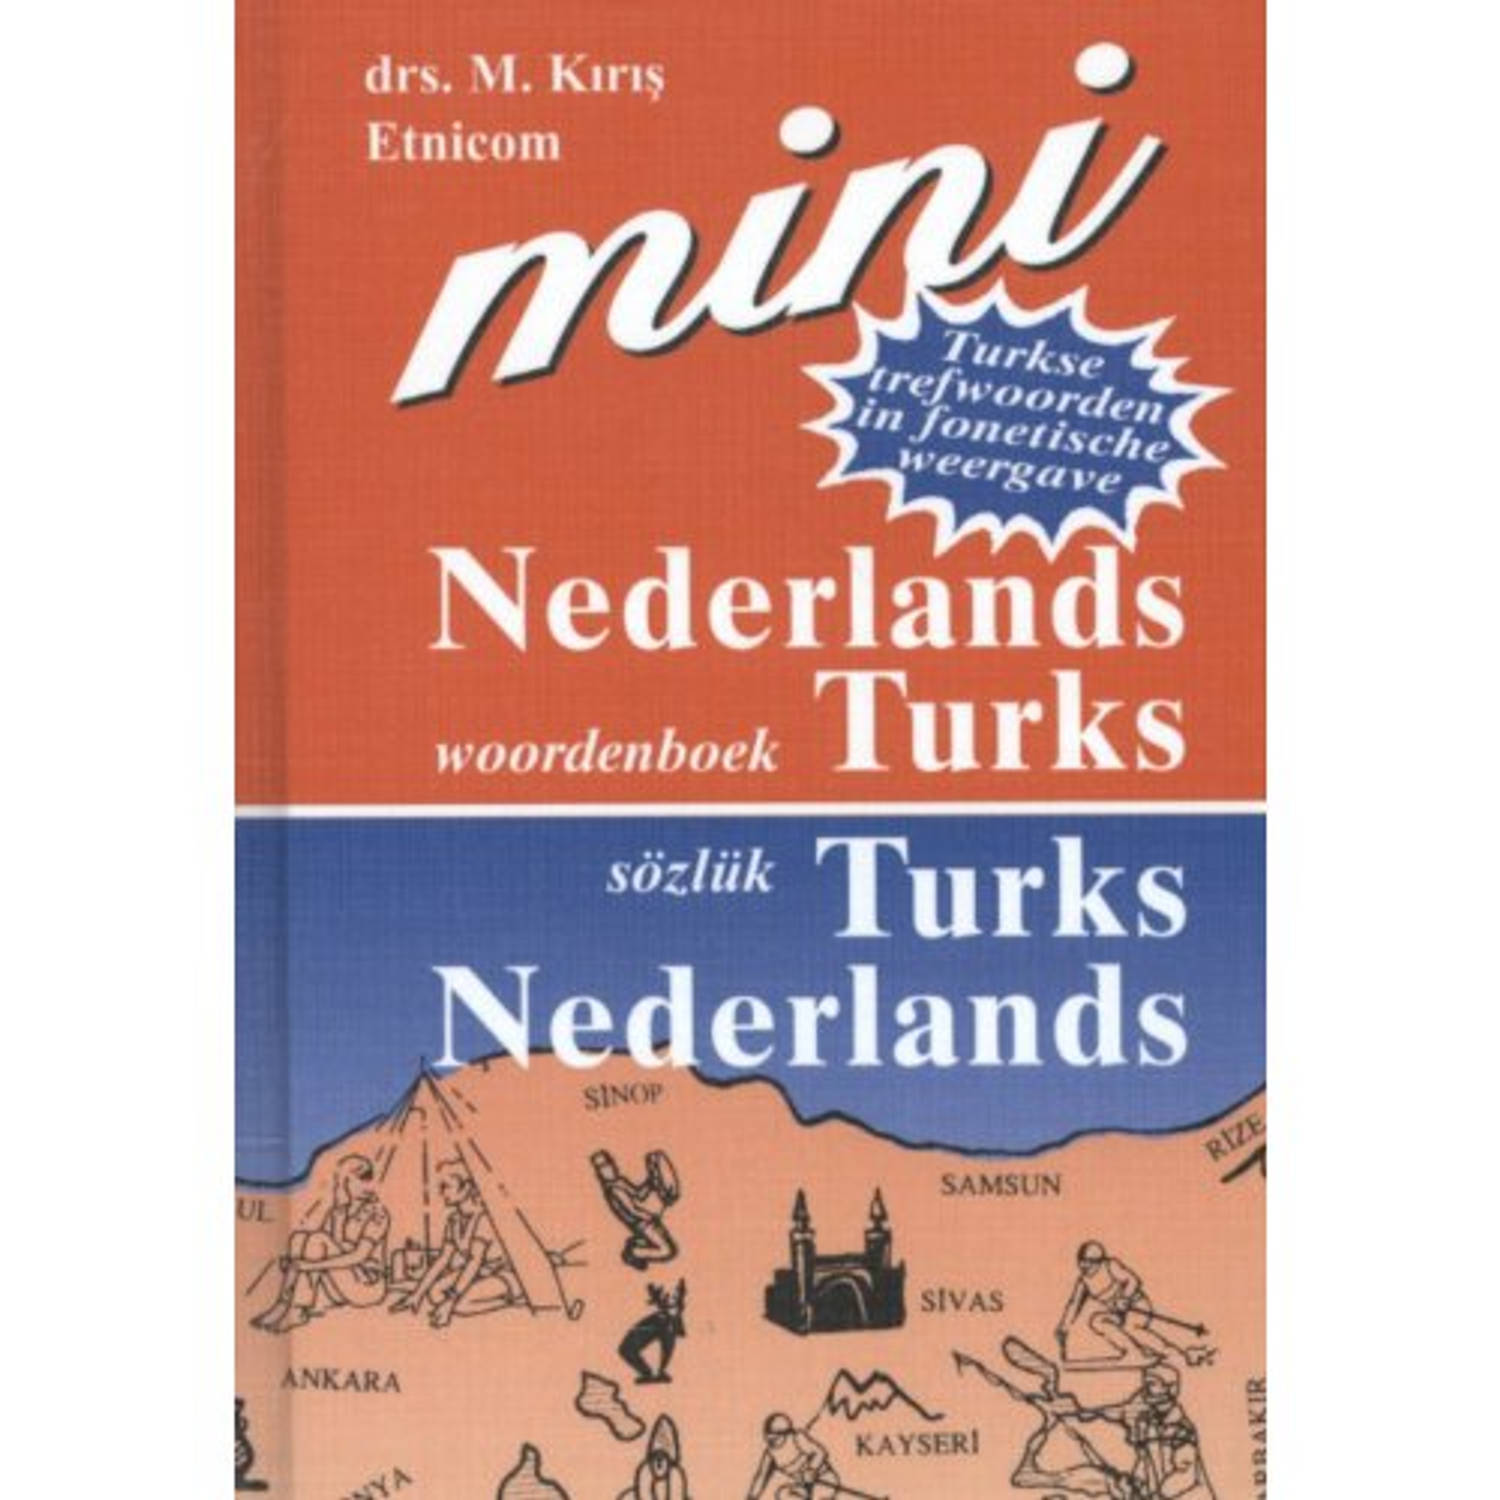 Nederlands-Turks Turks-Nederlands;